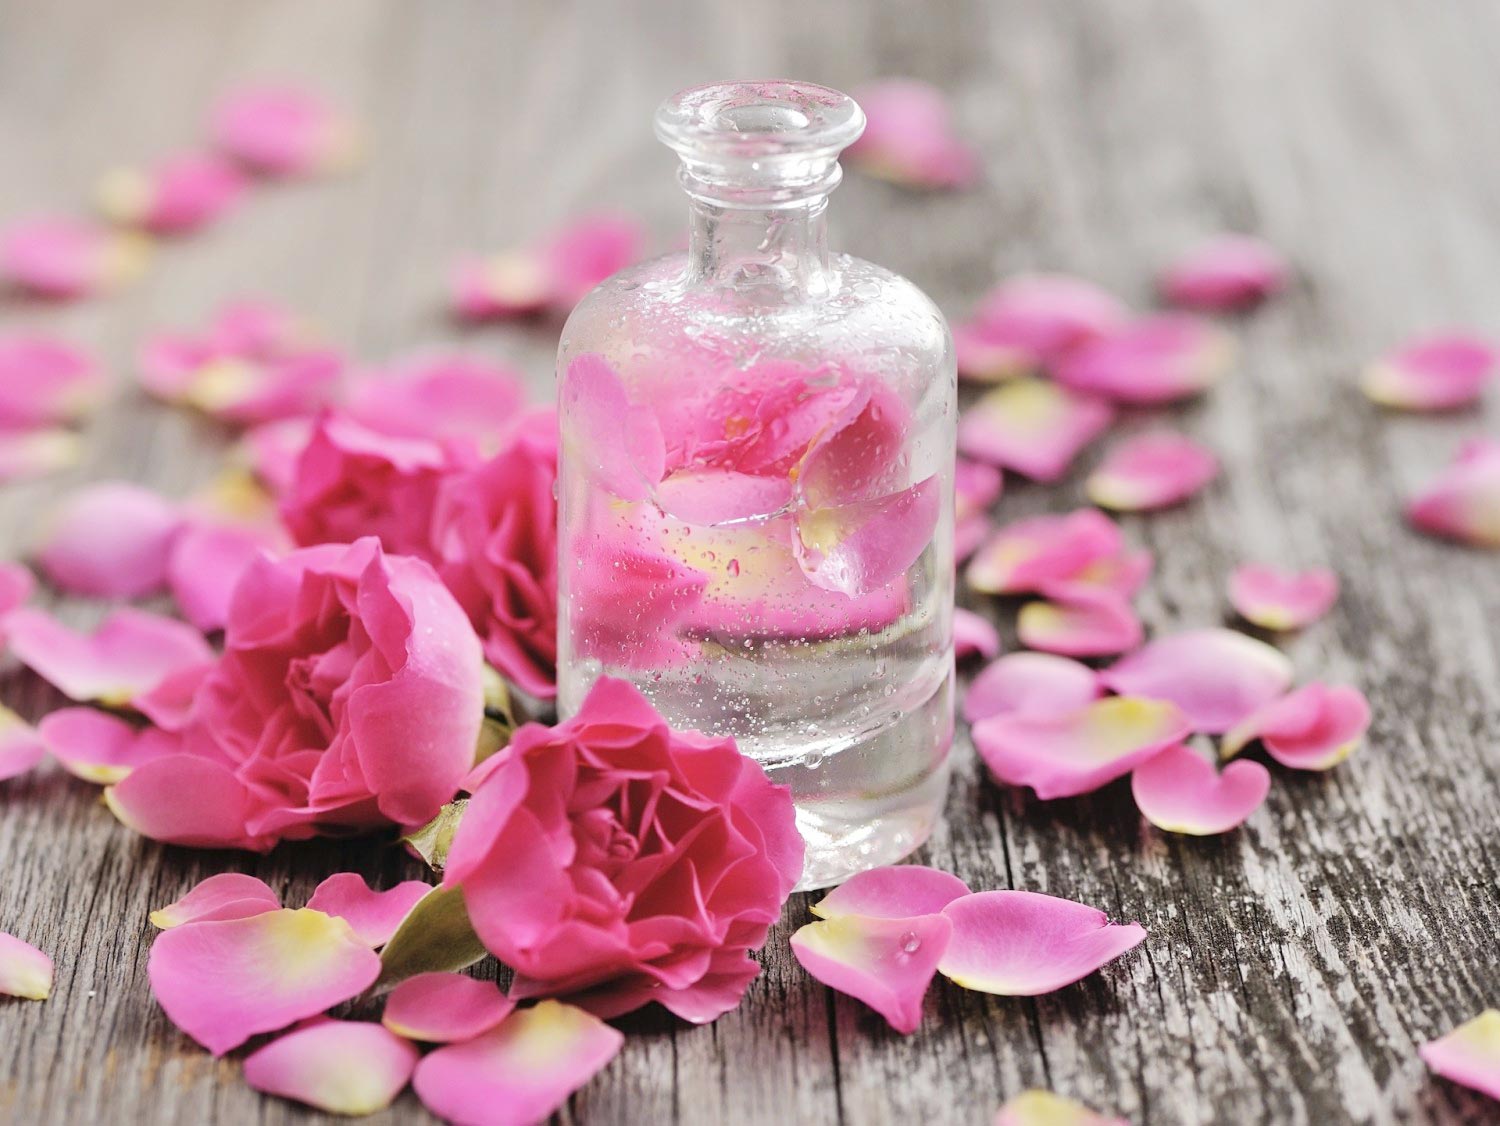   Nước hoa hồng giúp cân bằng độ pH, làm sạch sâu và dưỡng ẩm da  